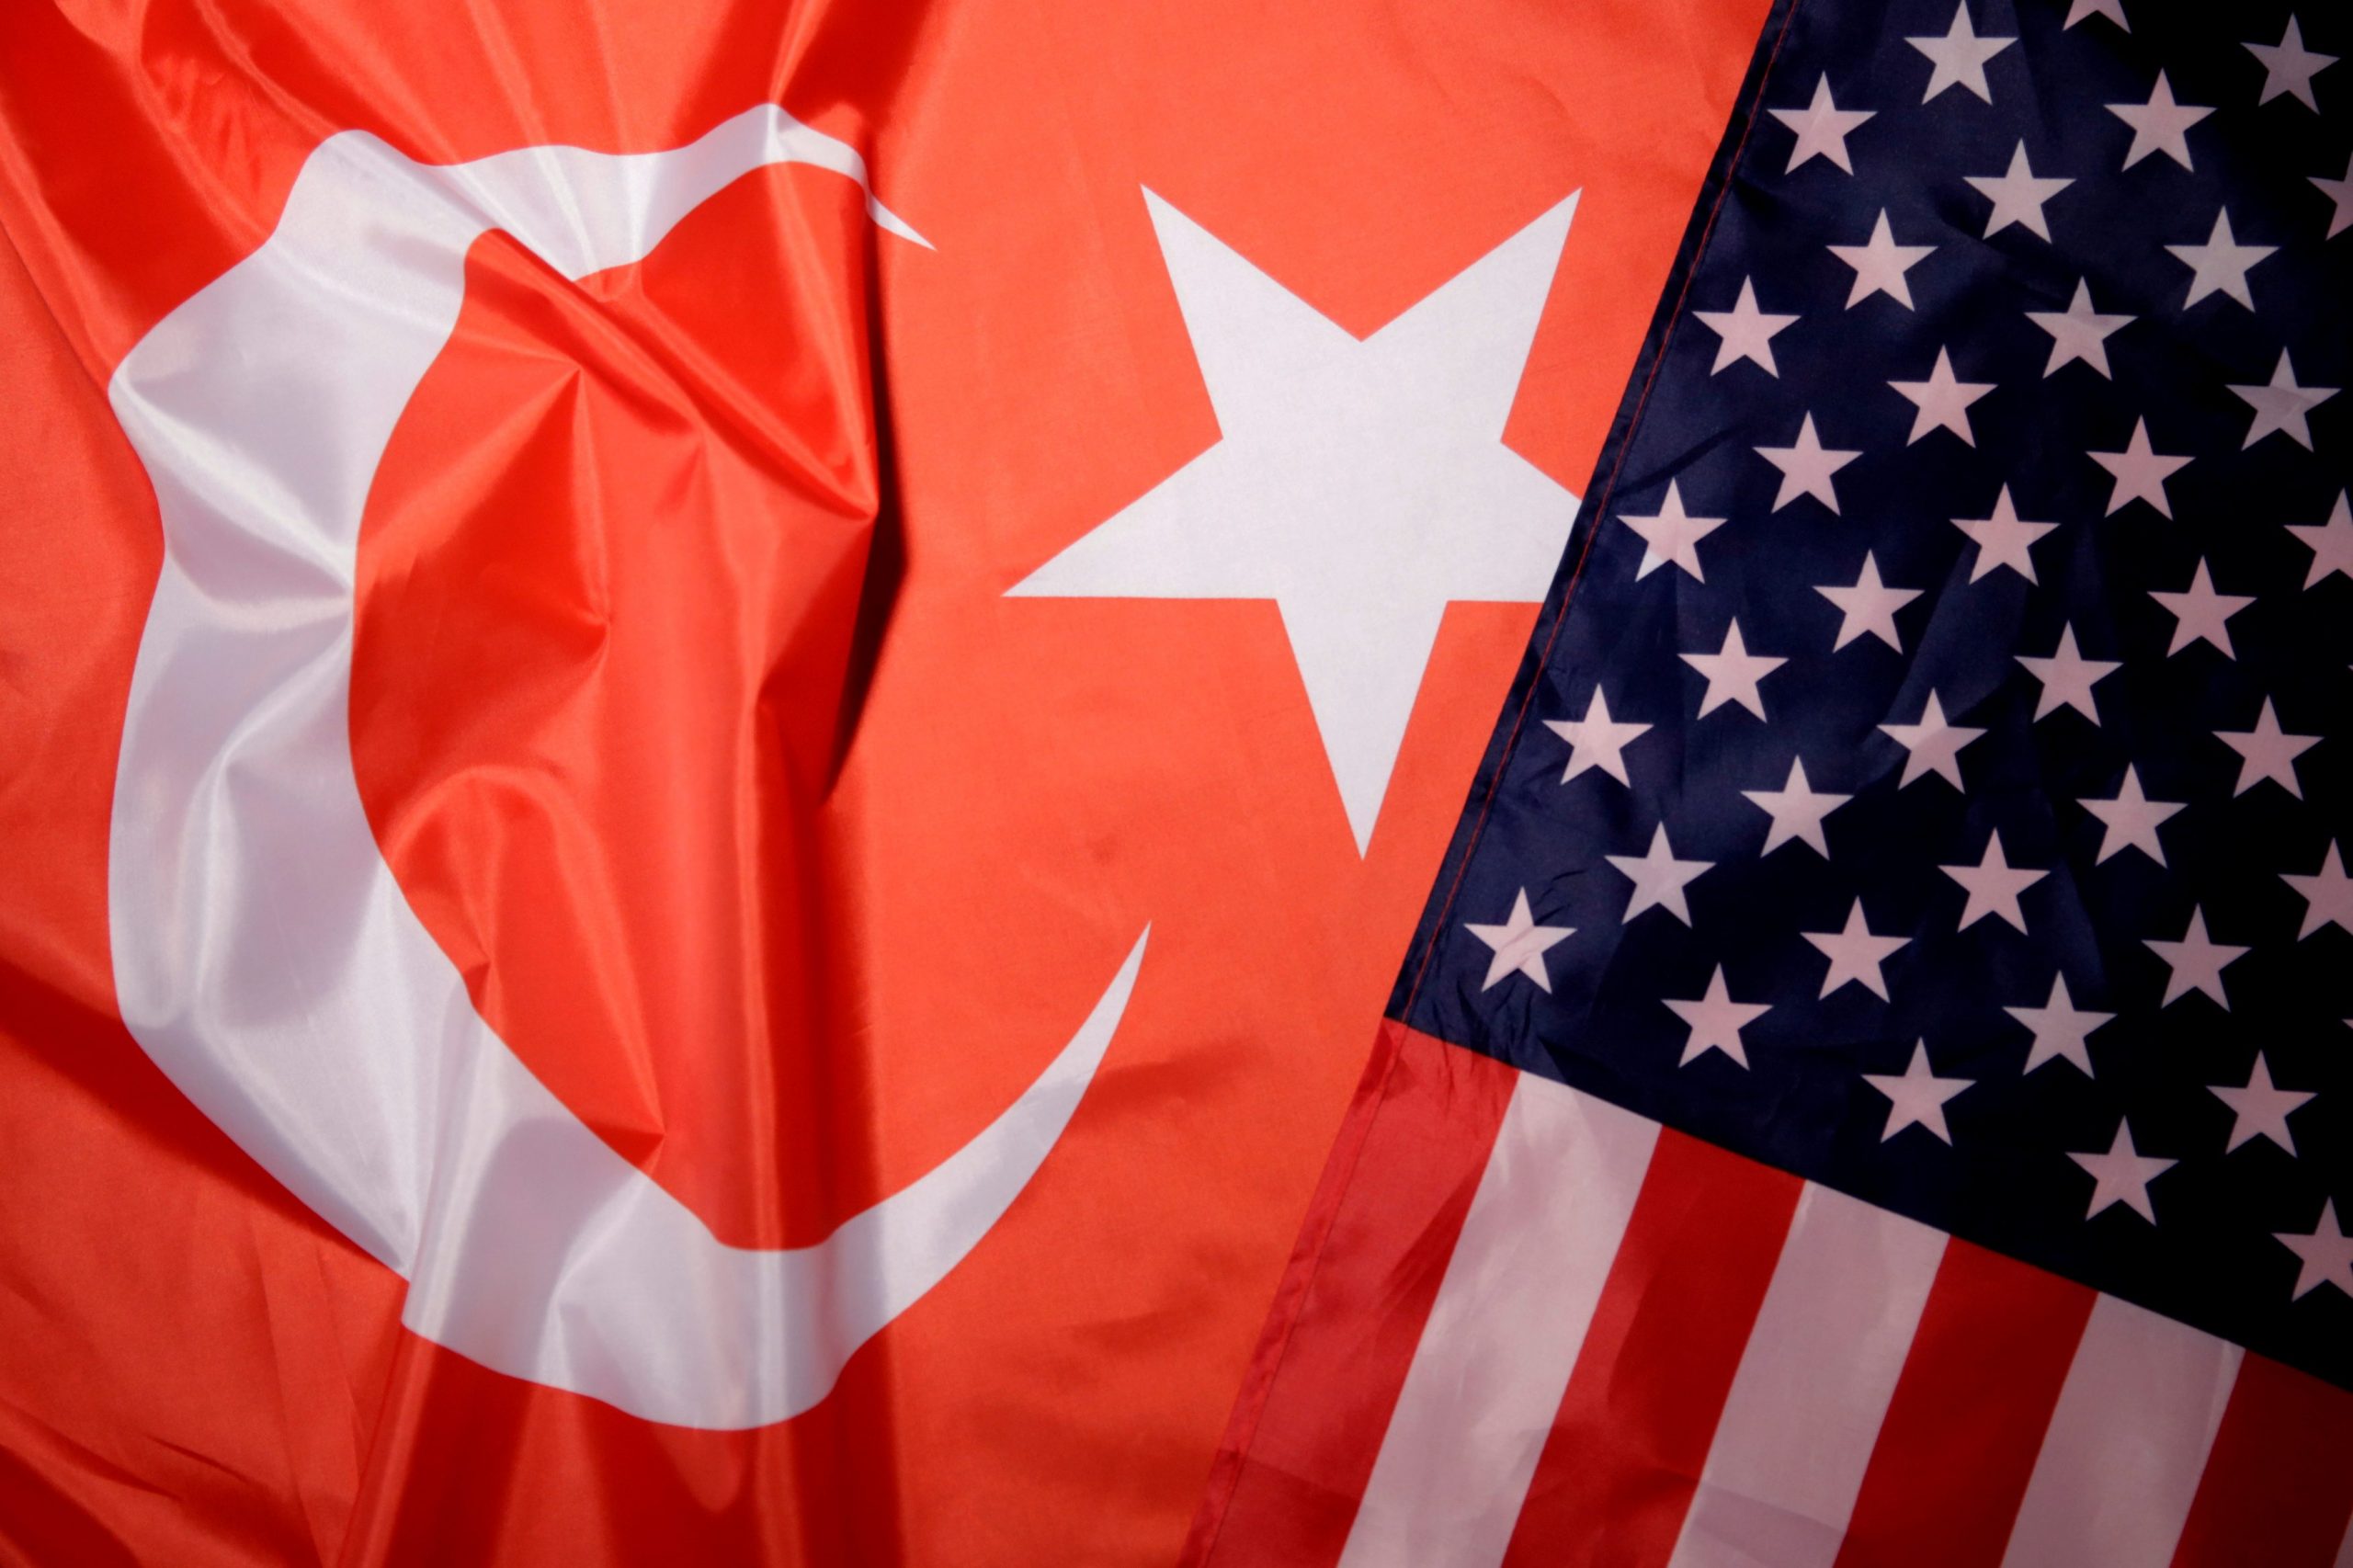 SHBA paralajmëron Turqinë për eksportet që forcojnë “makinerinë” e luftës ruse